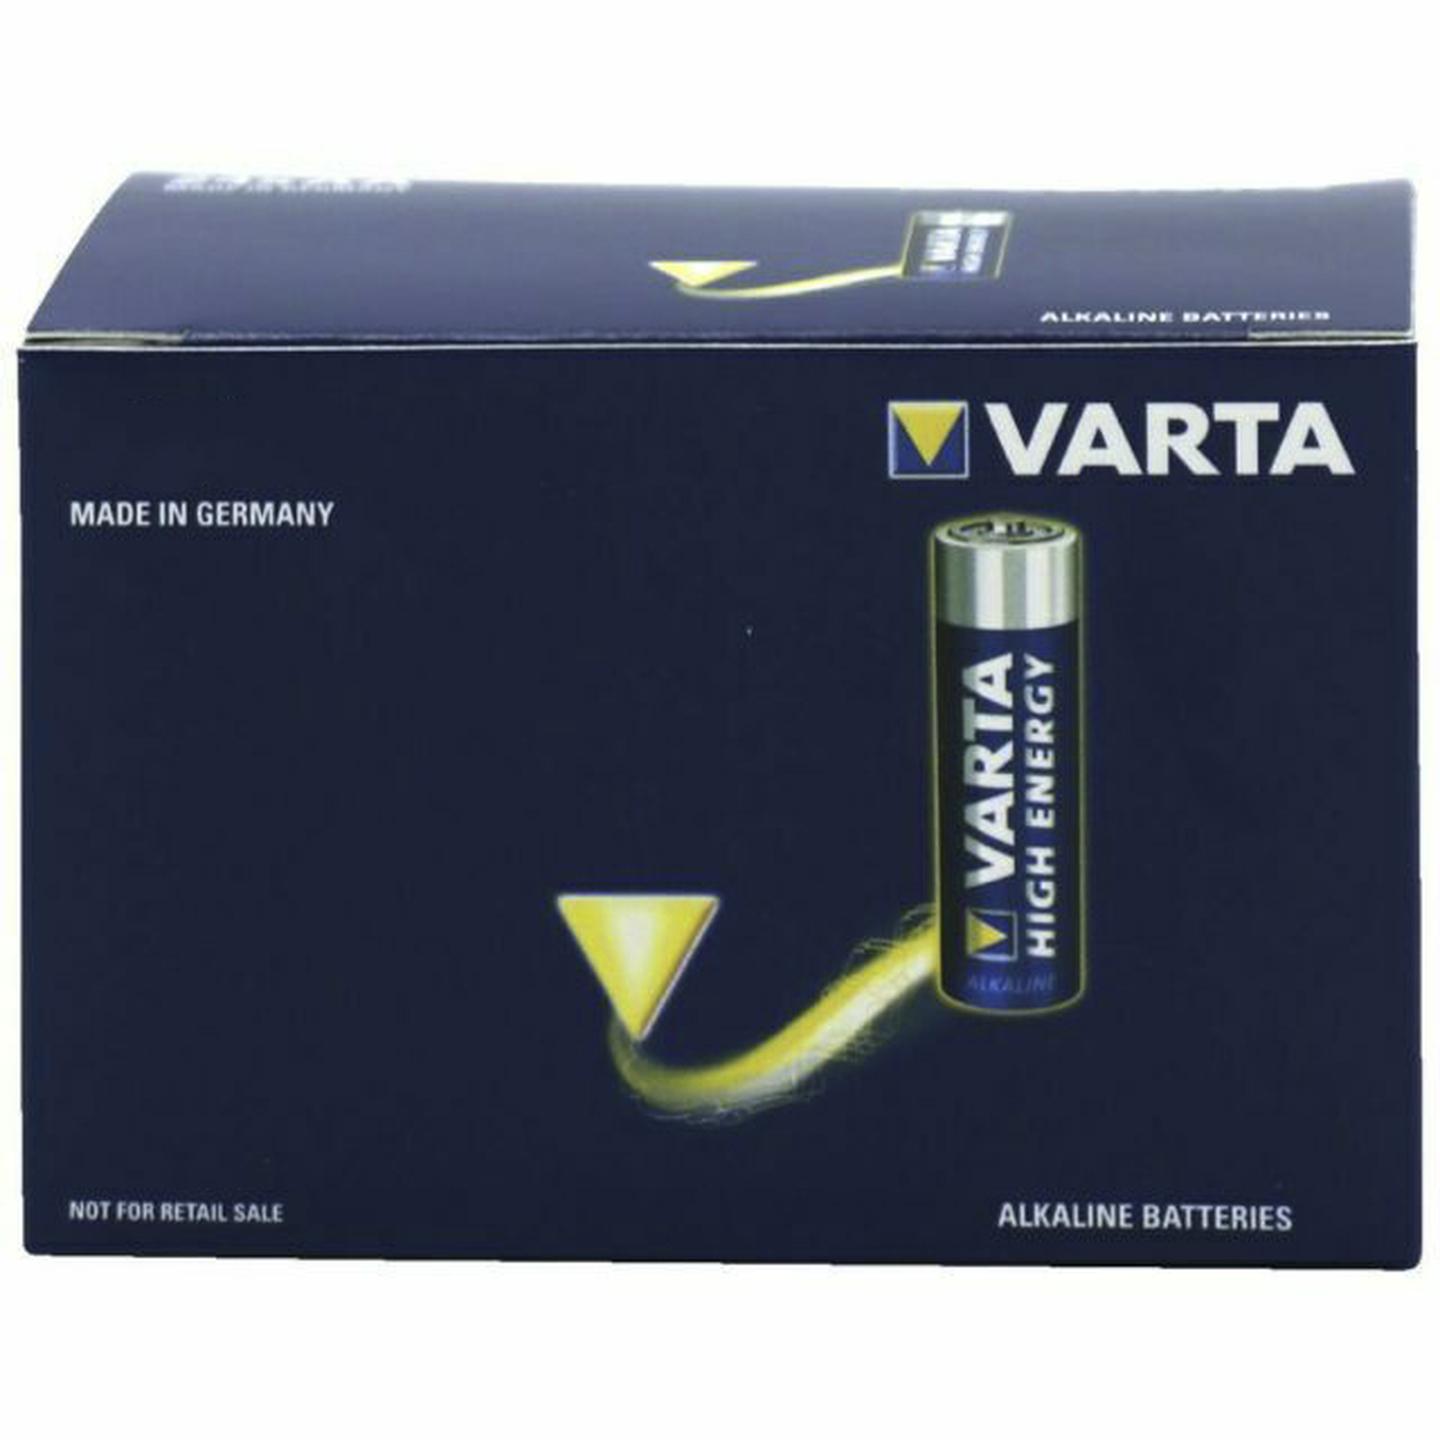 VARTA High Energy AAA Alkaline Batteries 24 Pack